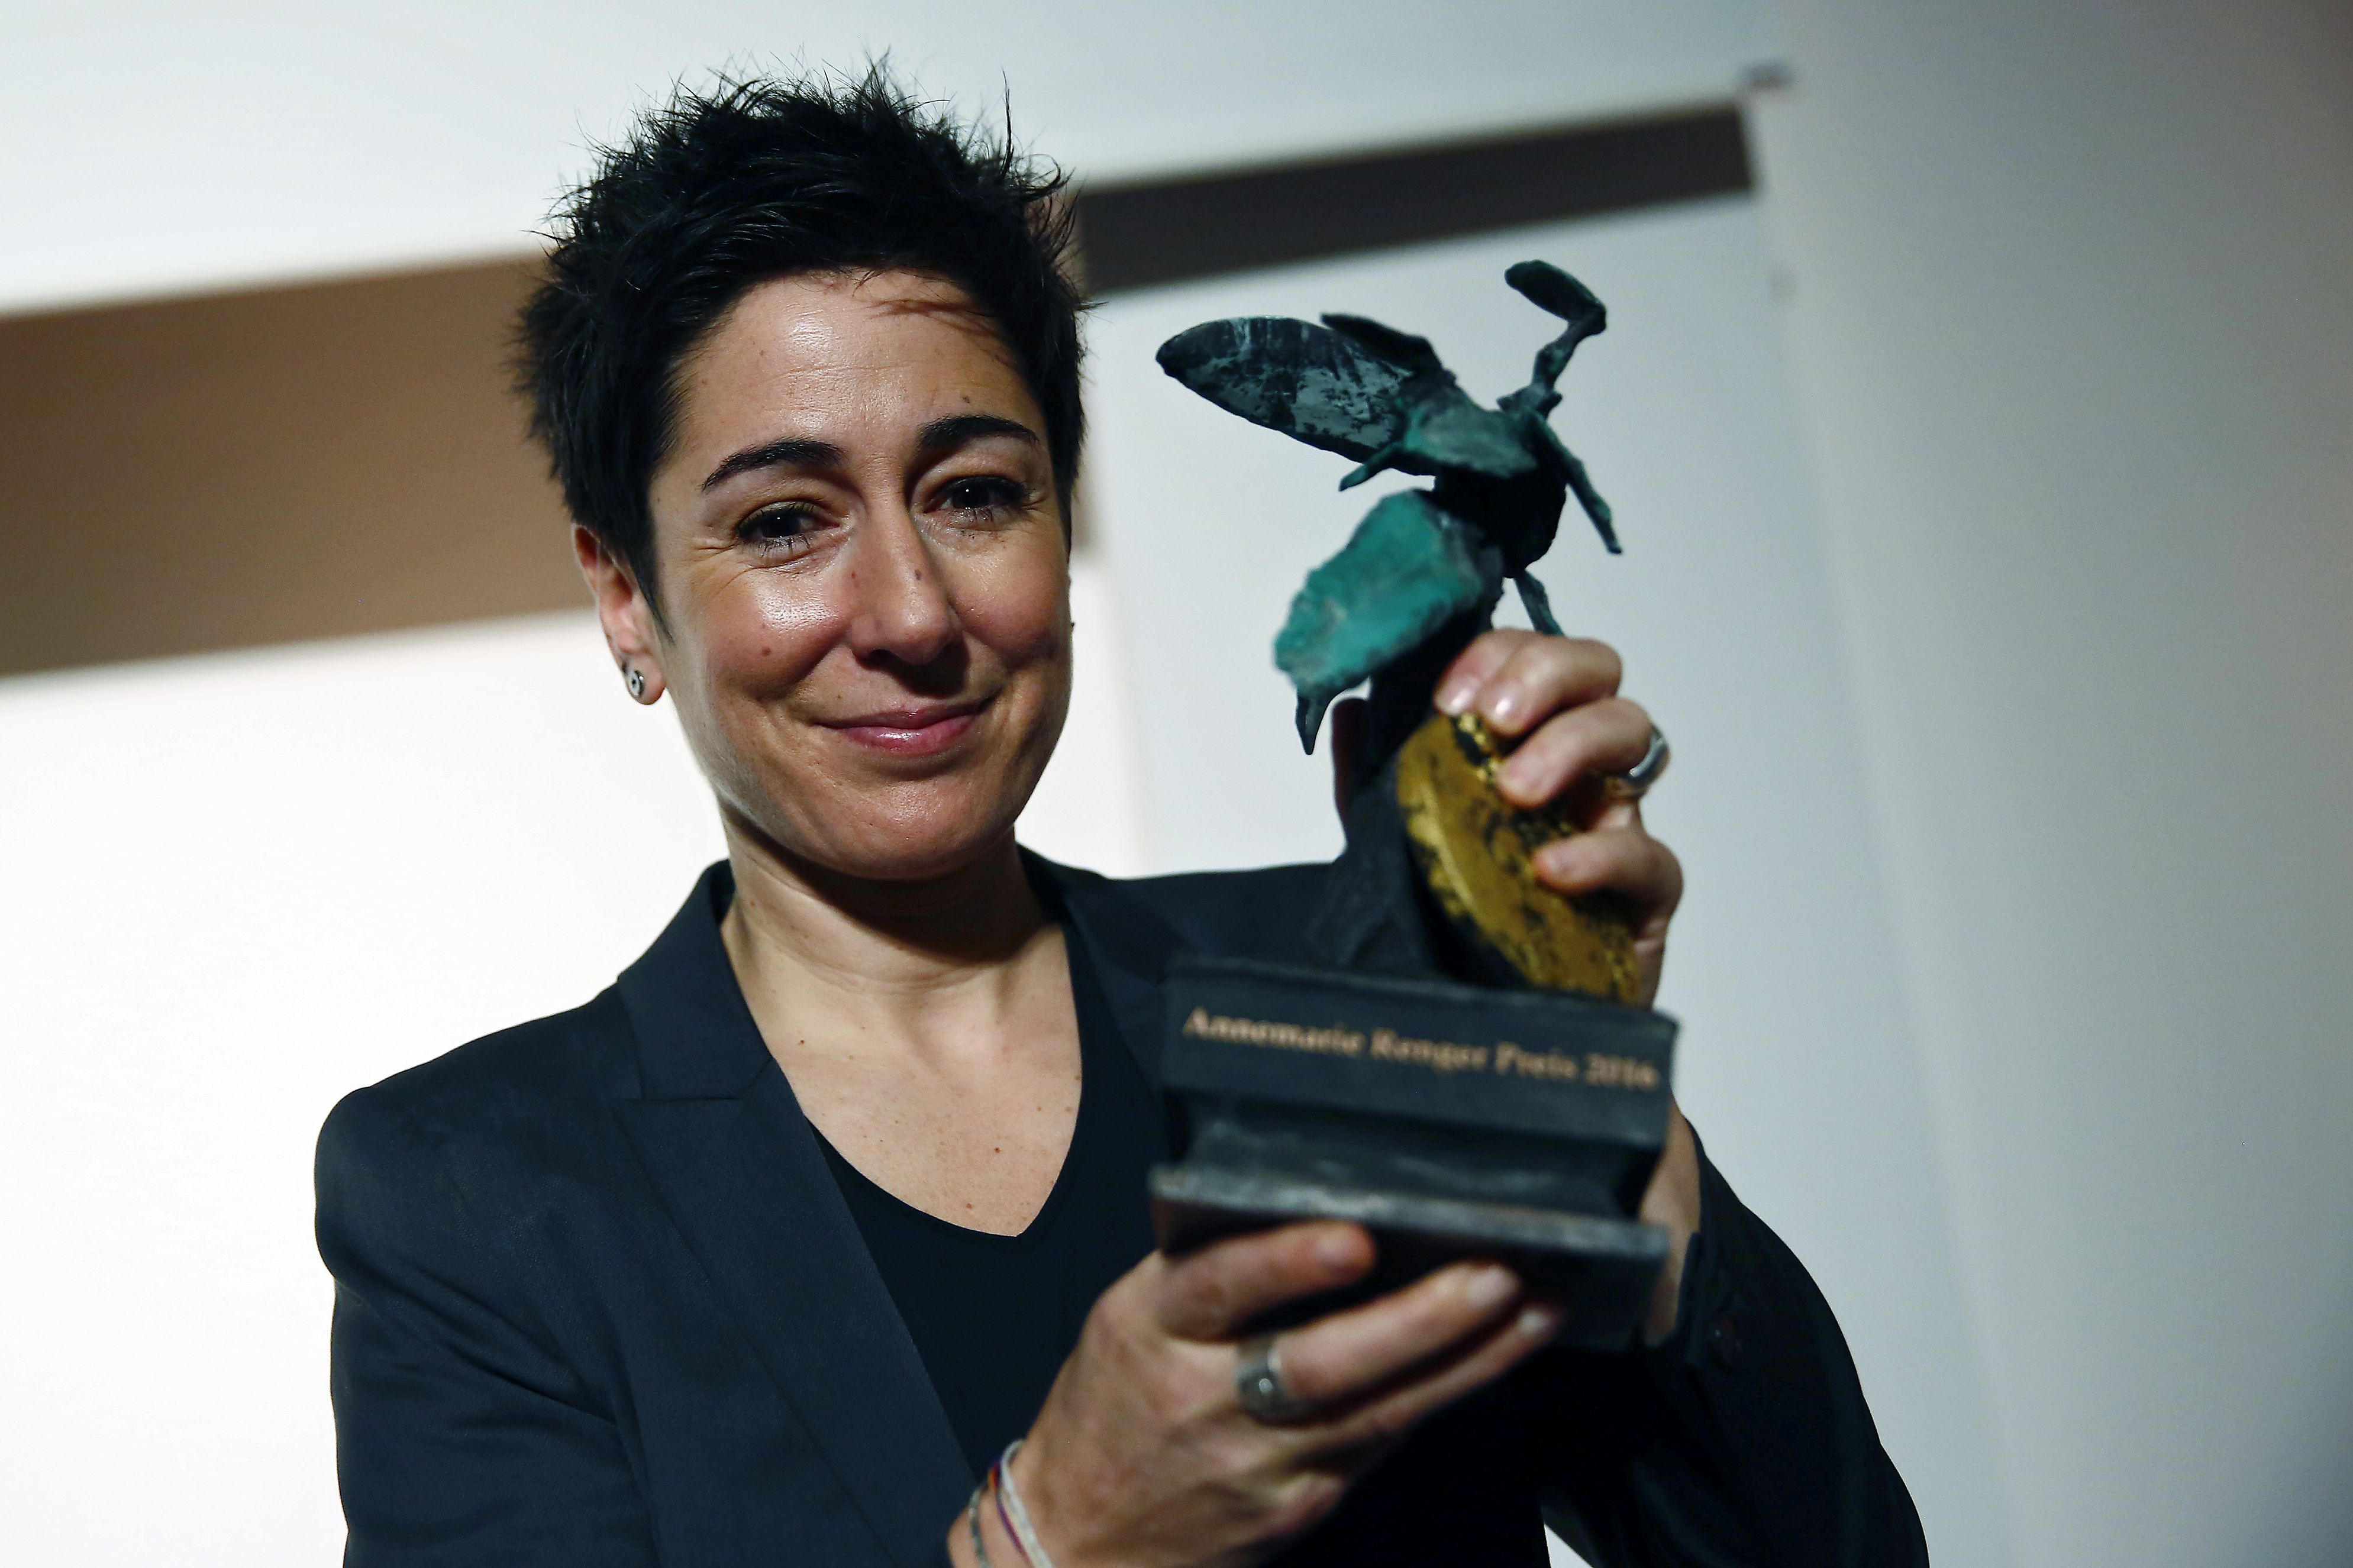 Dunja Hayali mit dem Annemarie-Renger-Preis des ASB. Der ASB zeichnete die Journalistin für ihren Einsatz für Toleranz und Meinungsfreiheit aus.